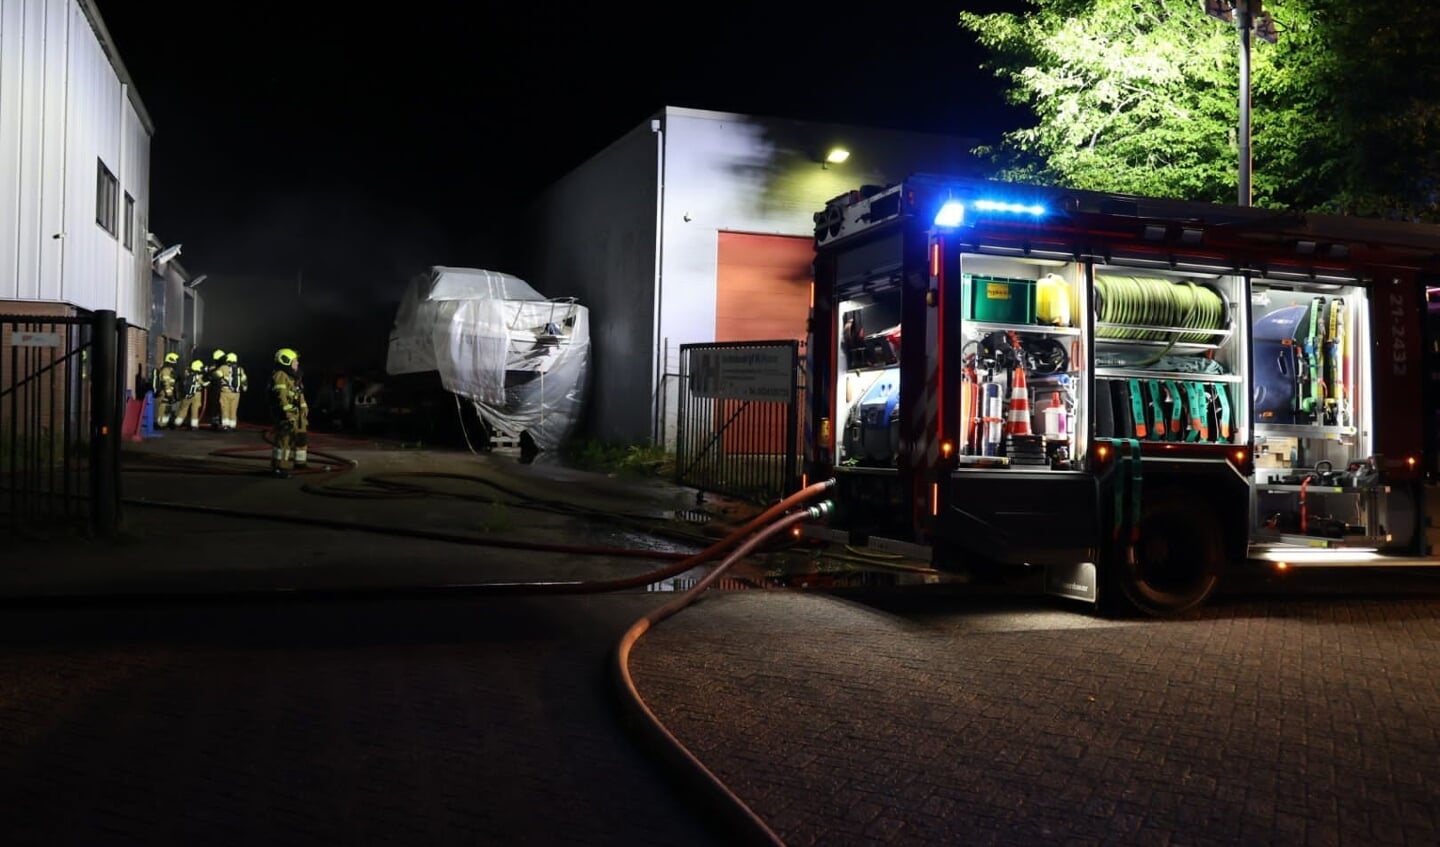 Bij de brand bij een bedrijf aan de Friezenstraat in Rosmalen gingen een camper en een personenauto in vlammen op.